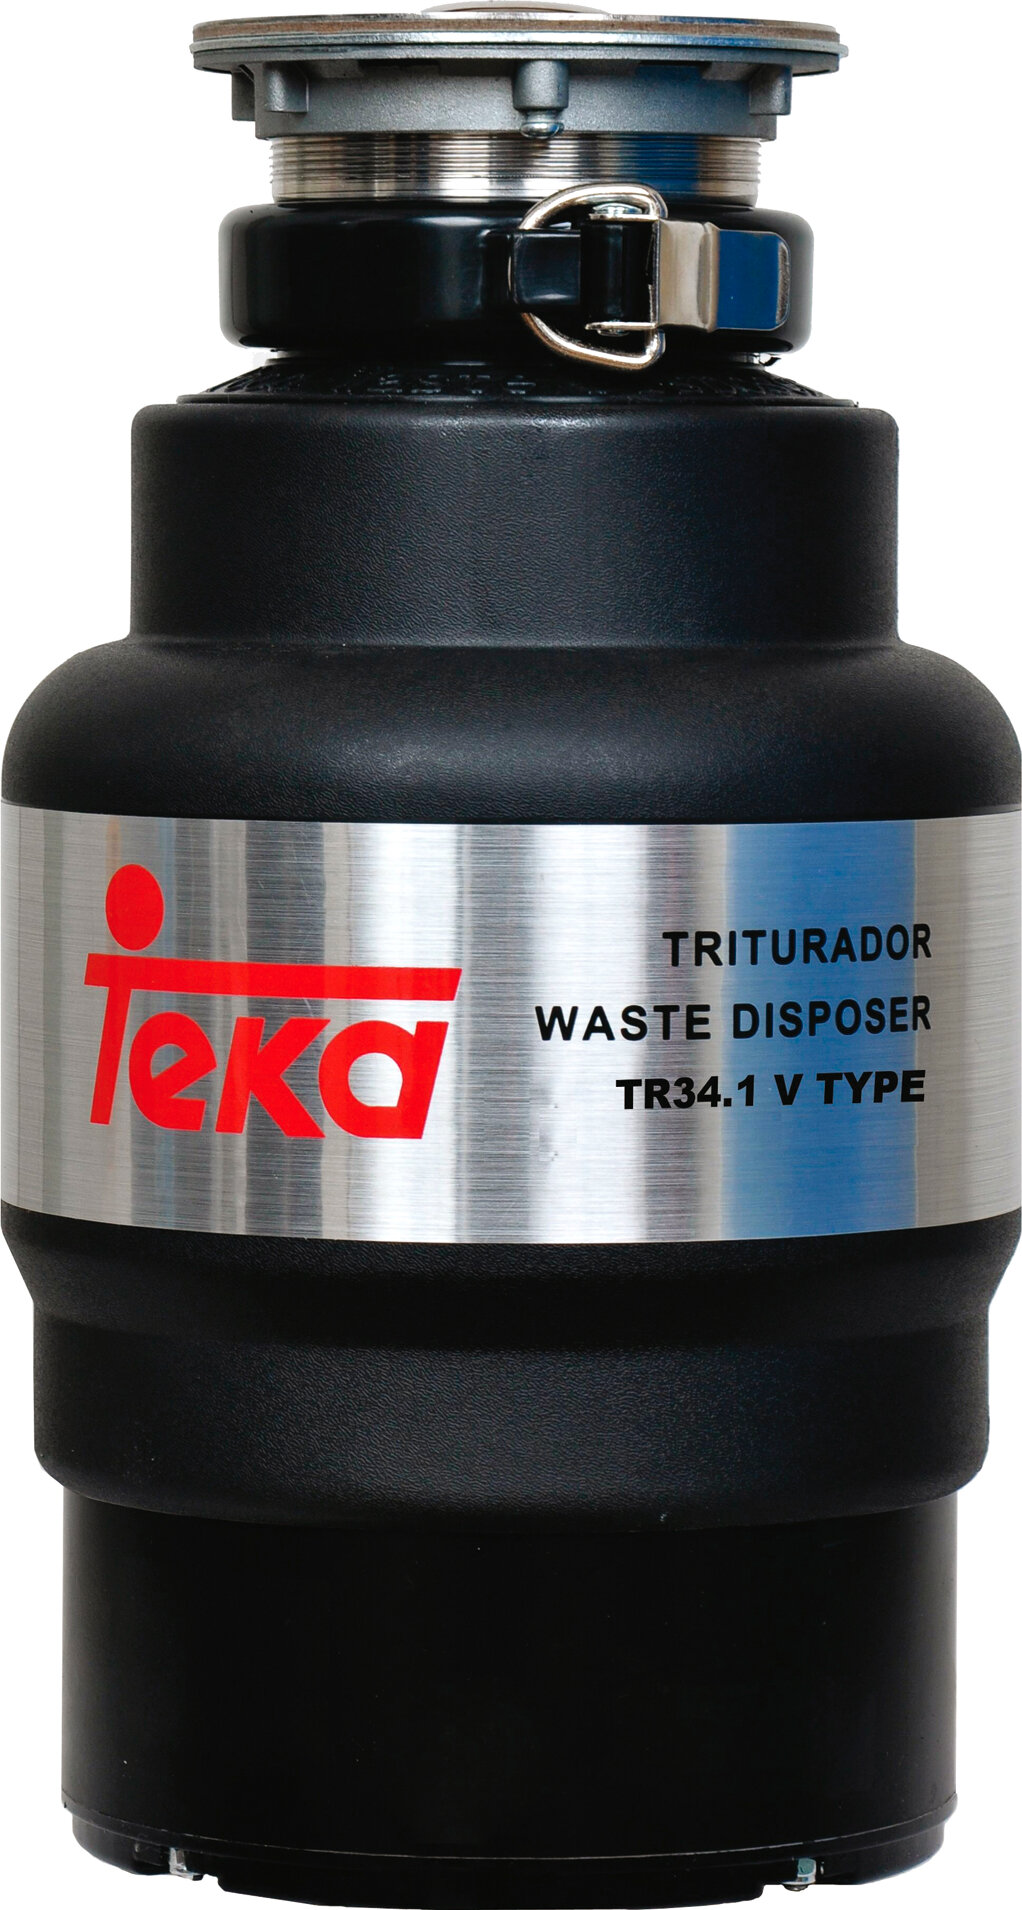 Teka Измельчитель отходов TEKA TR 34.1 V TYPE 40197111